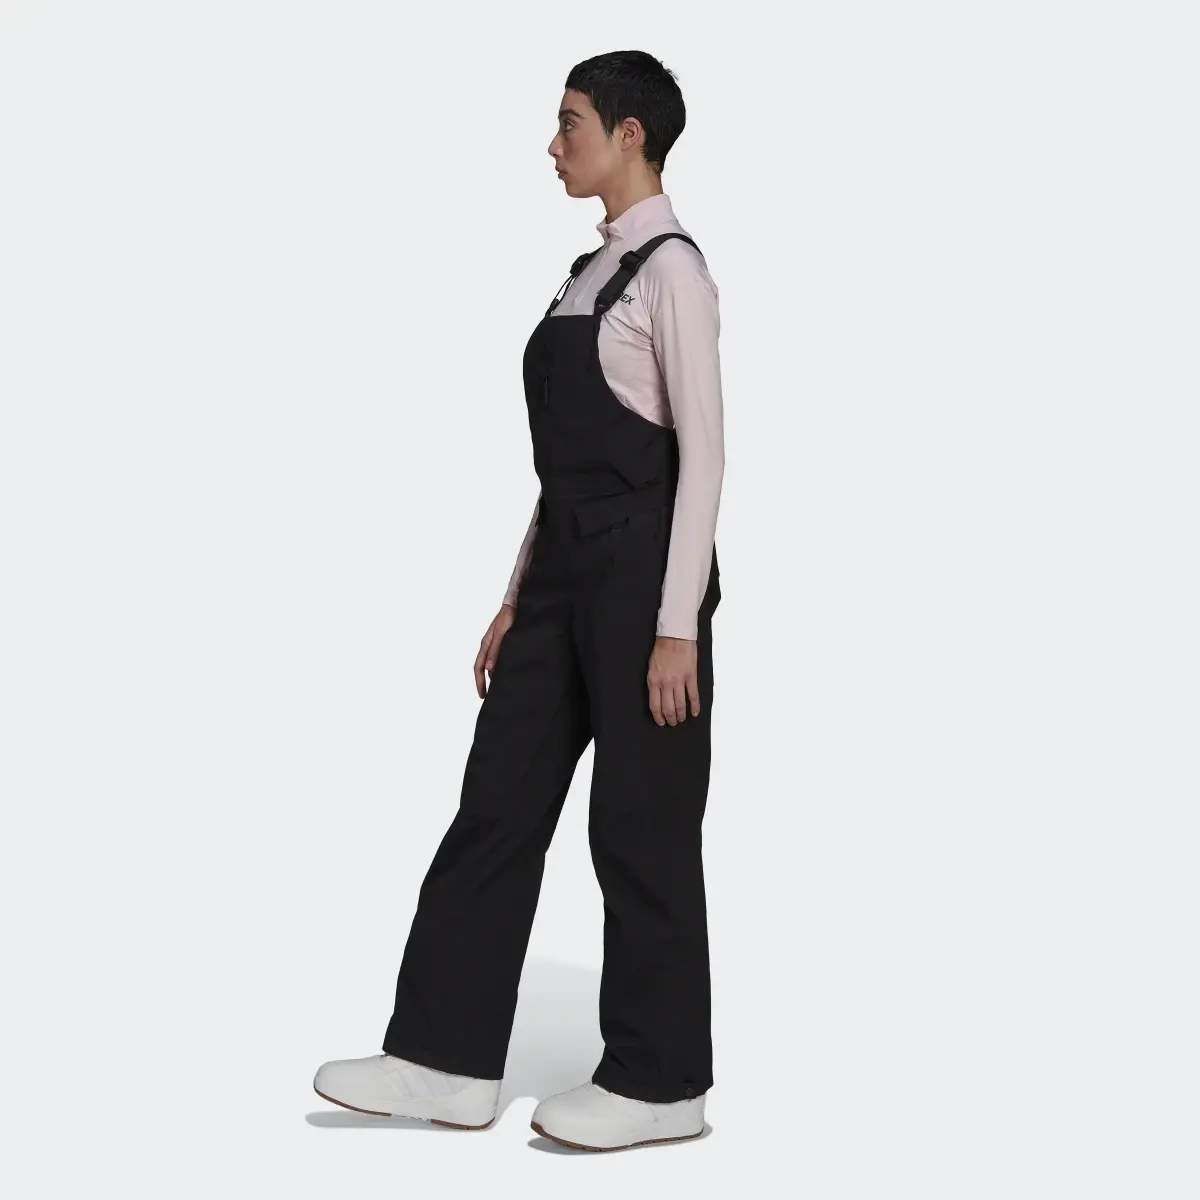 Adidas Pantalon Resort Two-Layer Insulated Bib. 2